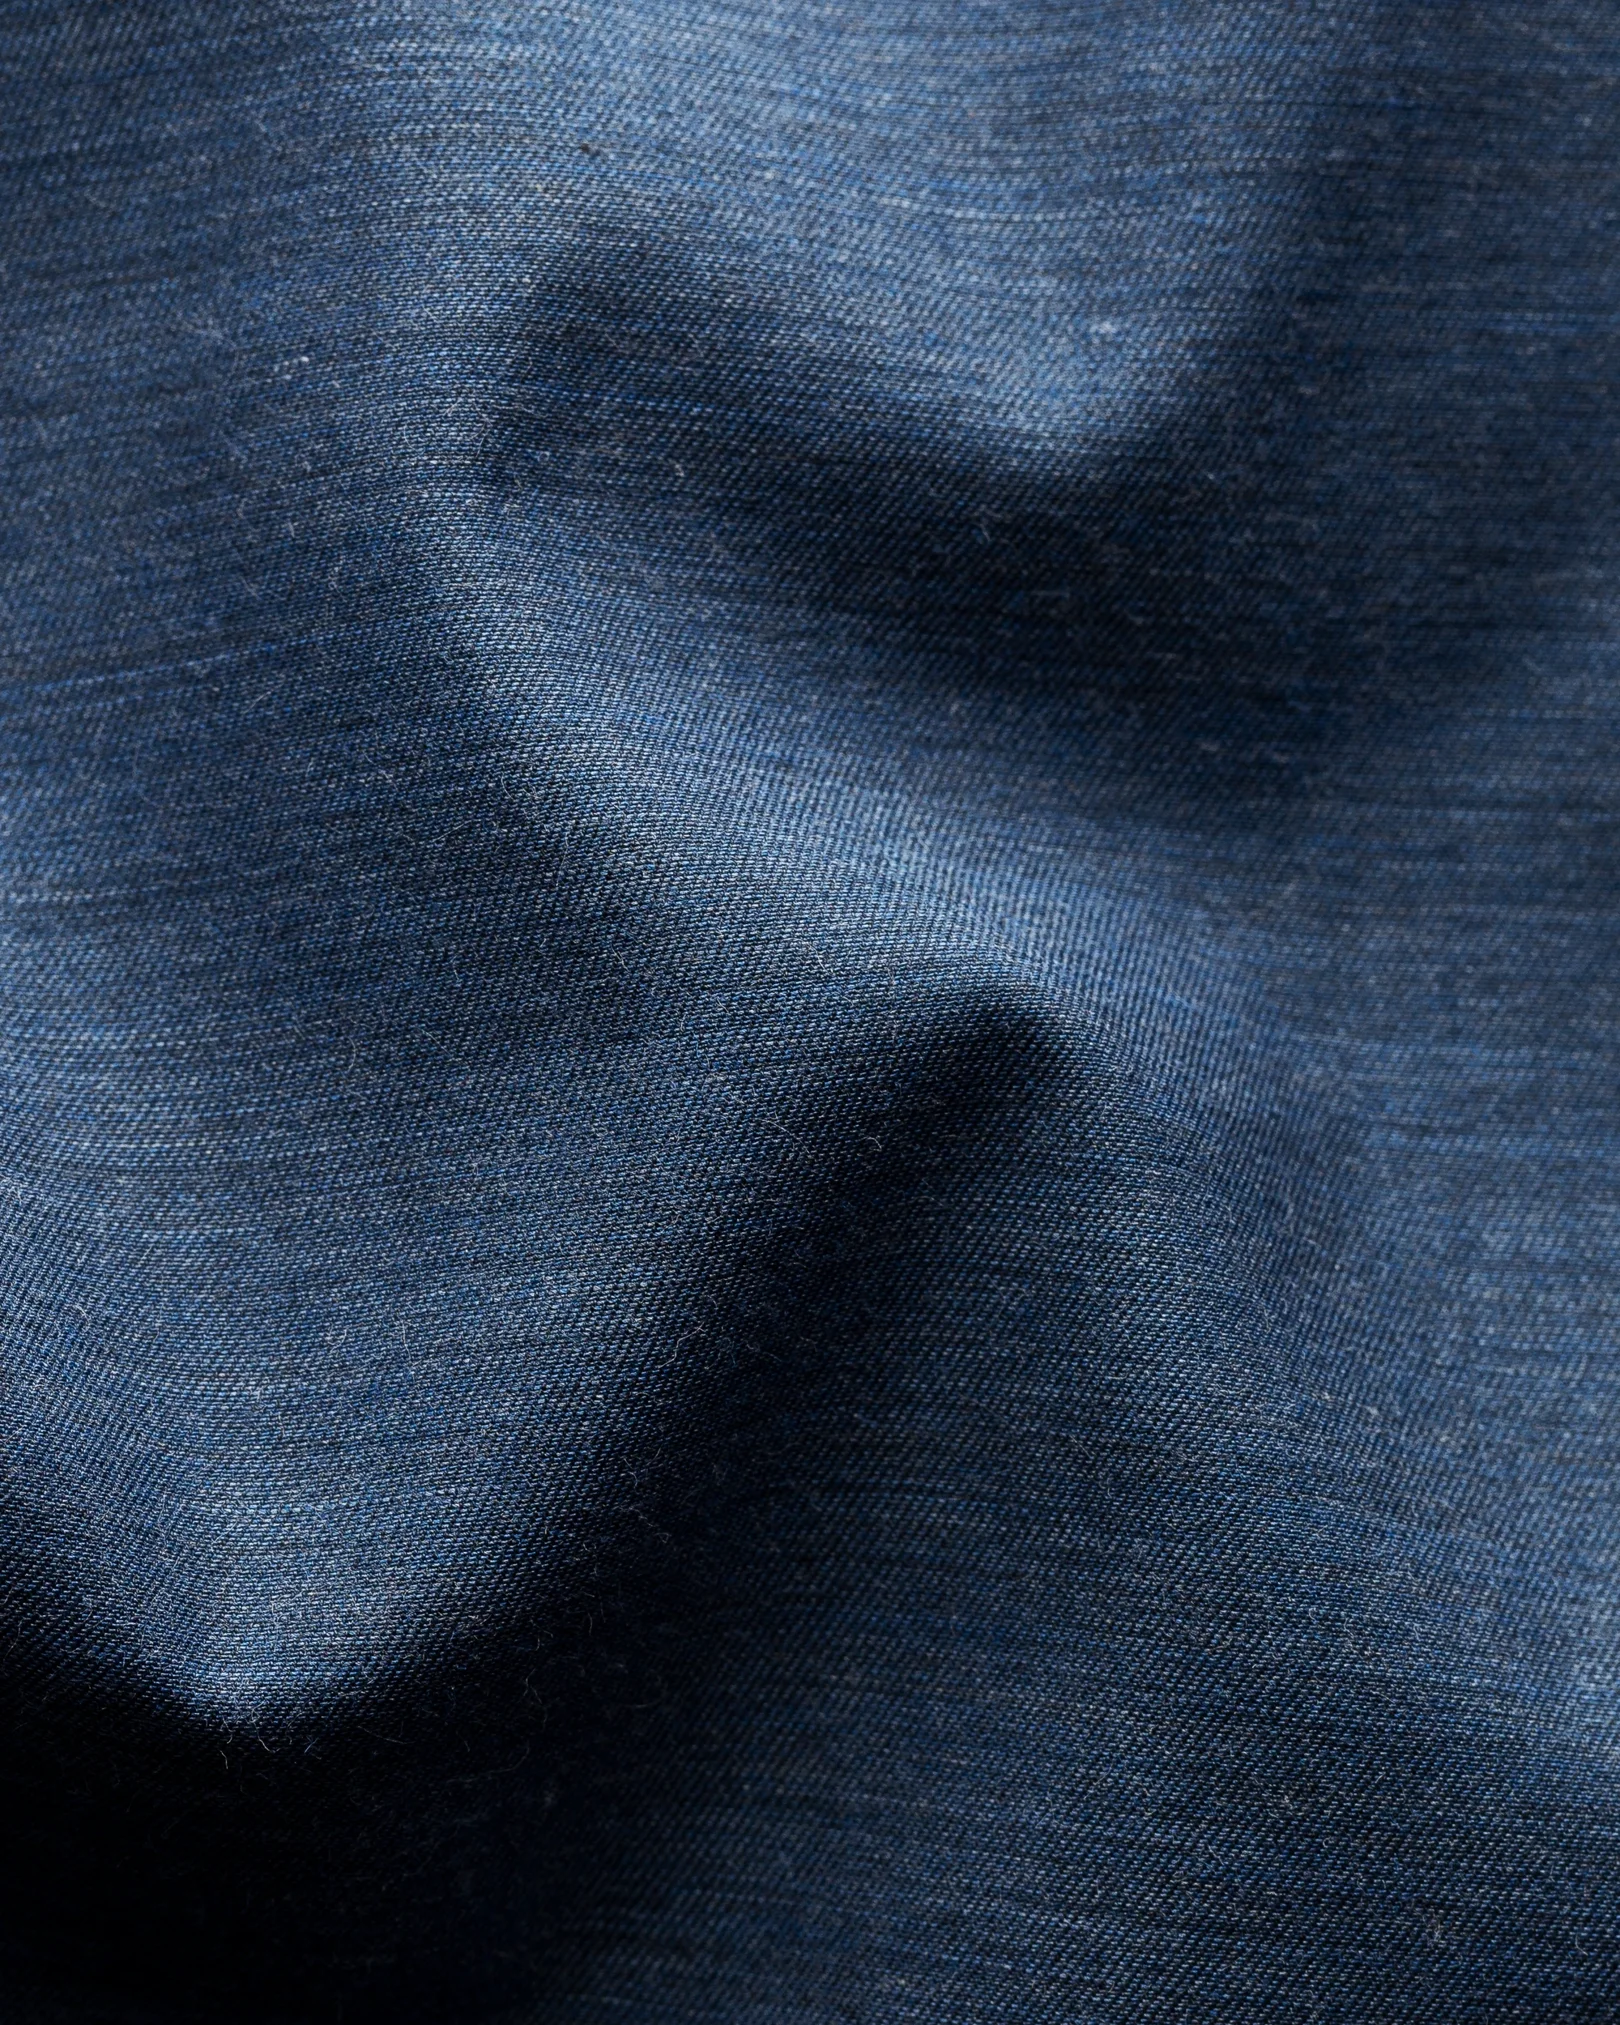 Eton - dark blue lightweight melange